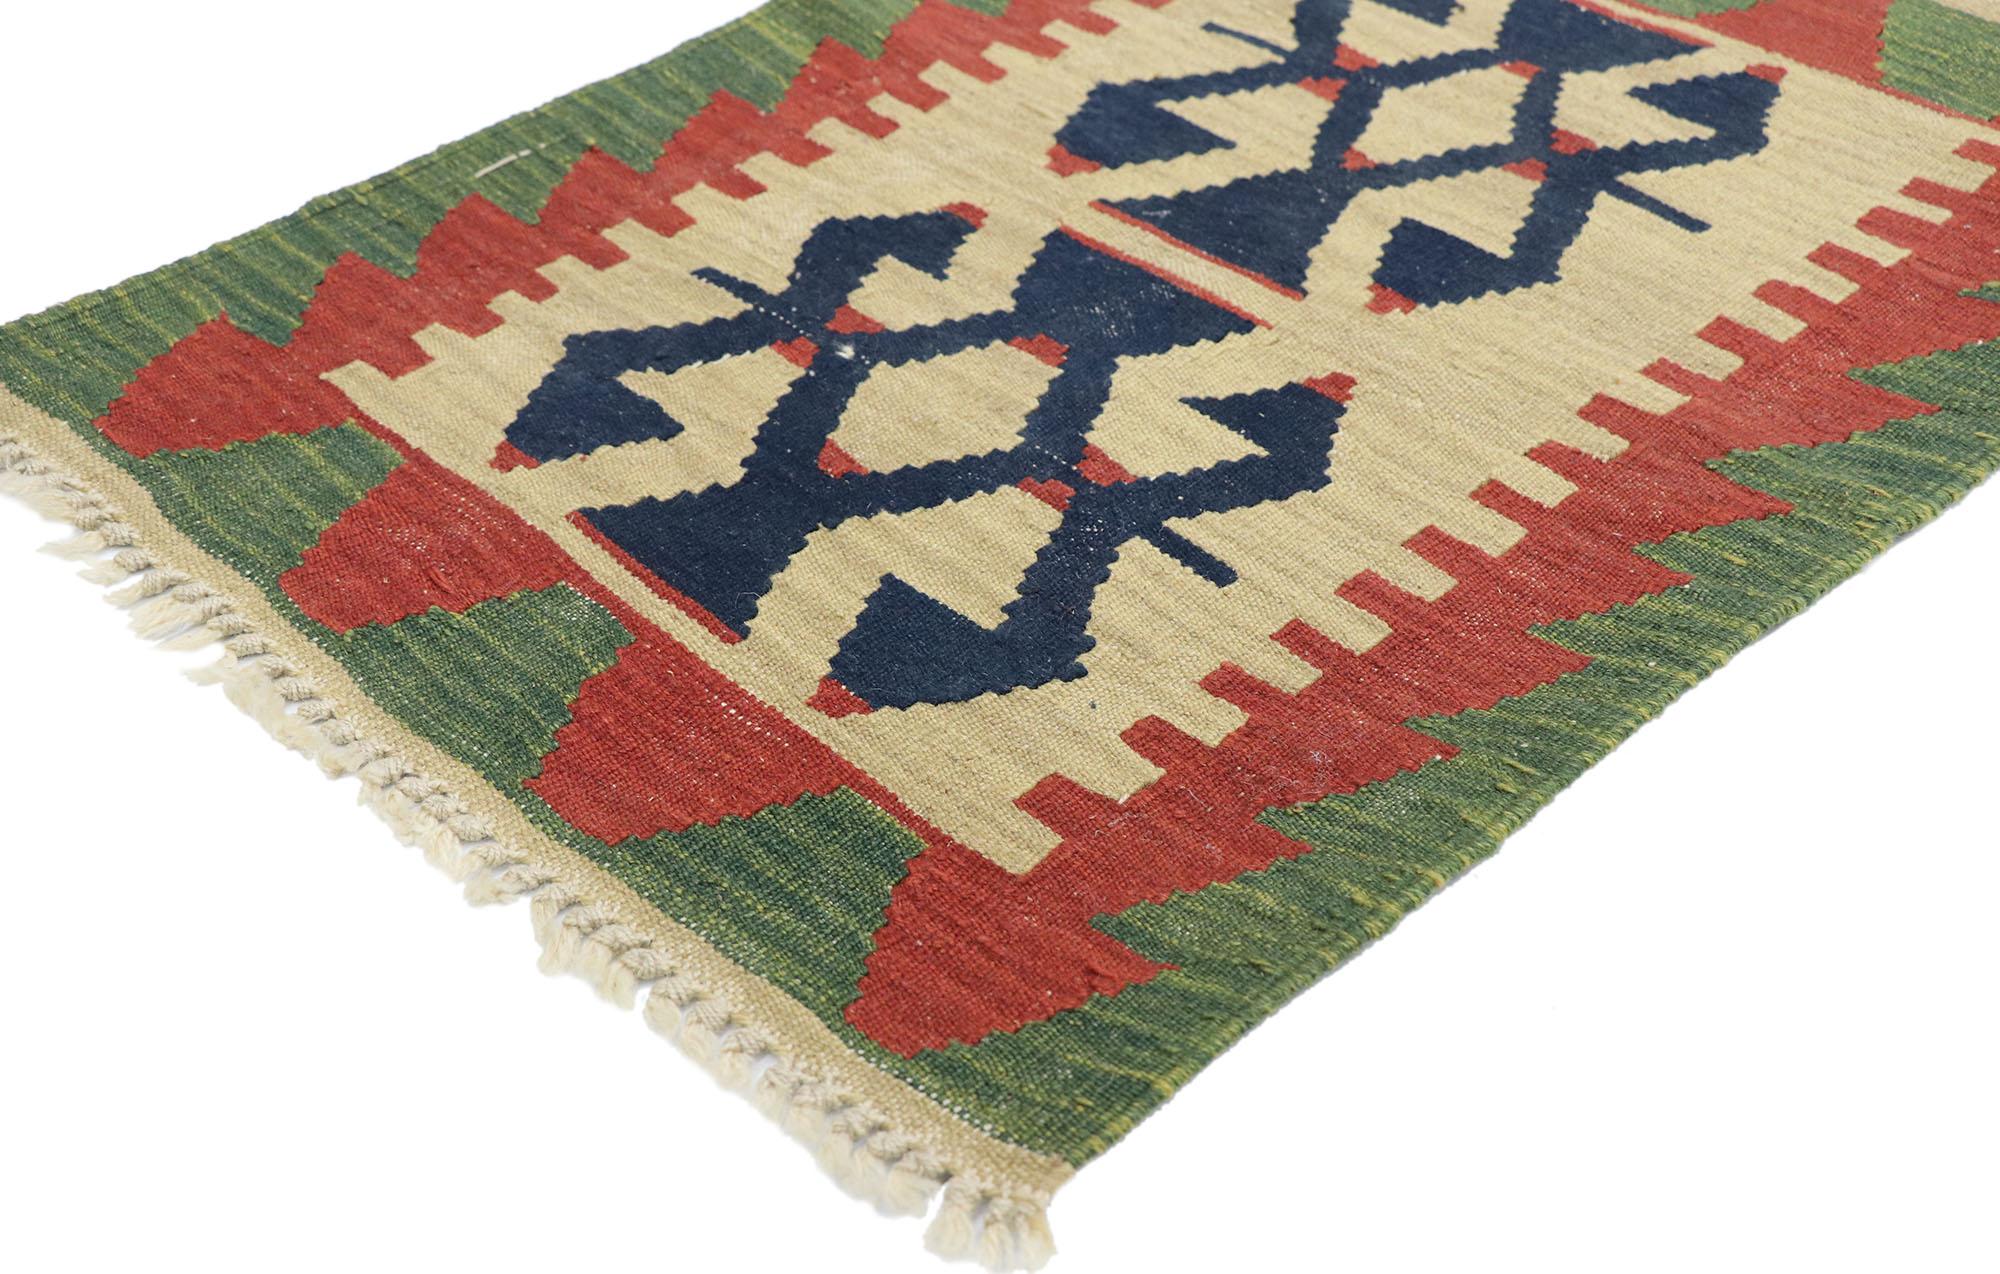 77907, tapis persan vintage Shiraz Kilim de style tribal. Rempli de détails minuscules et d'un design expressif audacieux combiné à des couleurs vibrantes et à un style tribal, ce tapis kilim persan vintage en laine Shiraz tissé à la main est une